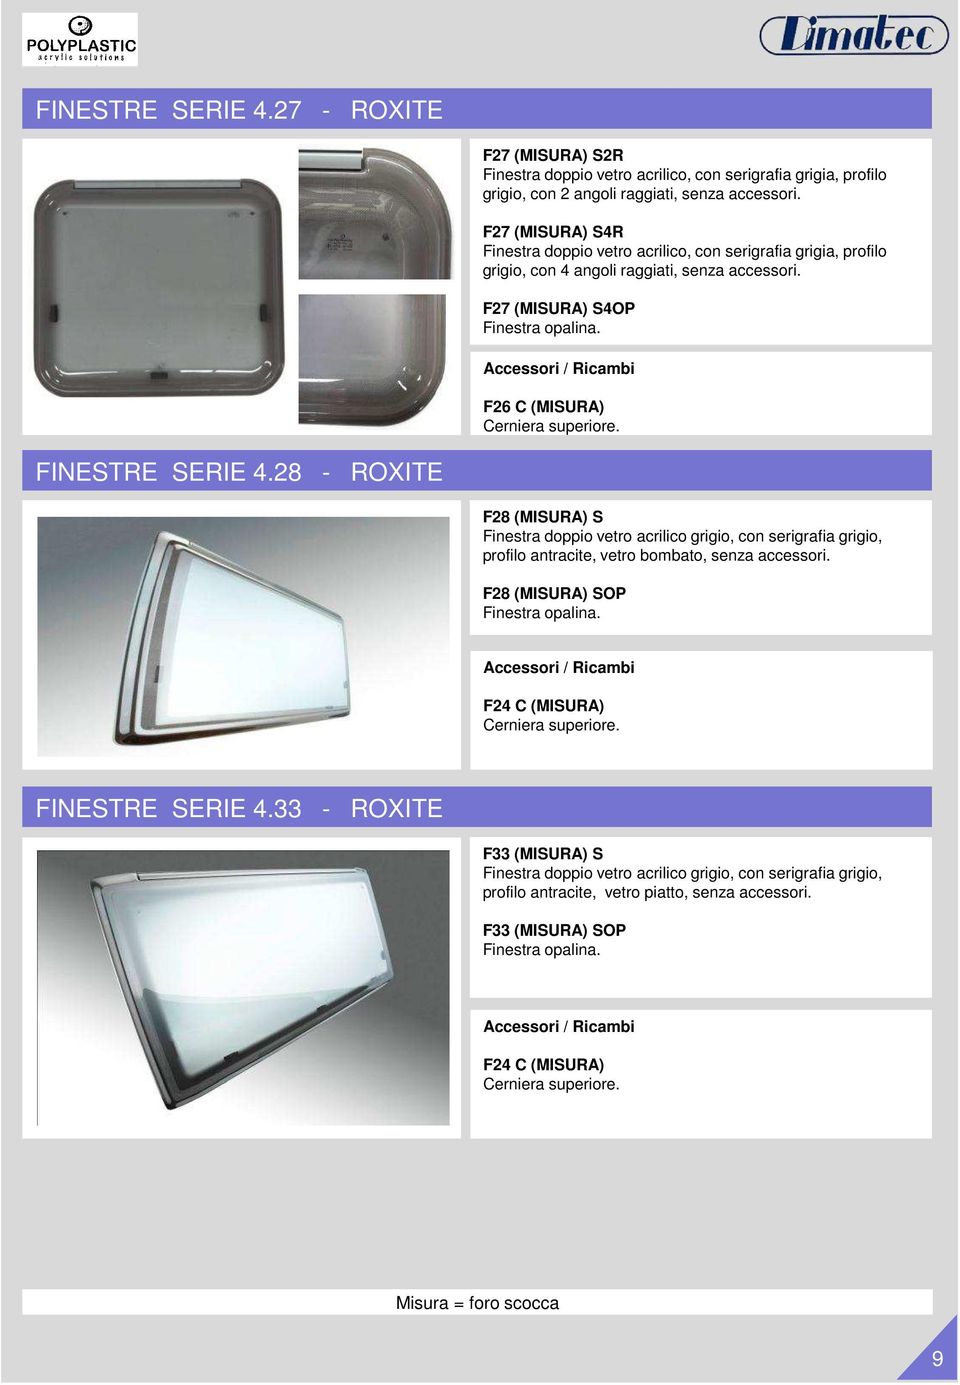 FINESTRE SERIE 4.28 - ROXITE F28 (MISURA) S Finestra doppio vetro acrilico grigio, con serigrafia grigio, profilo antracite, vetro bombato, senza accessori.